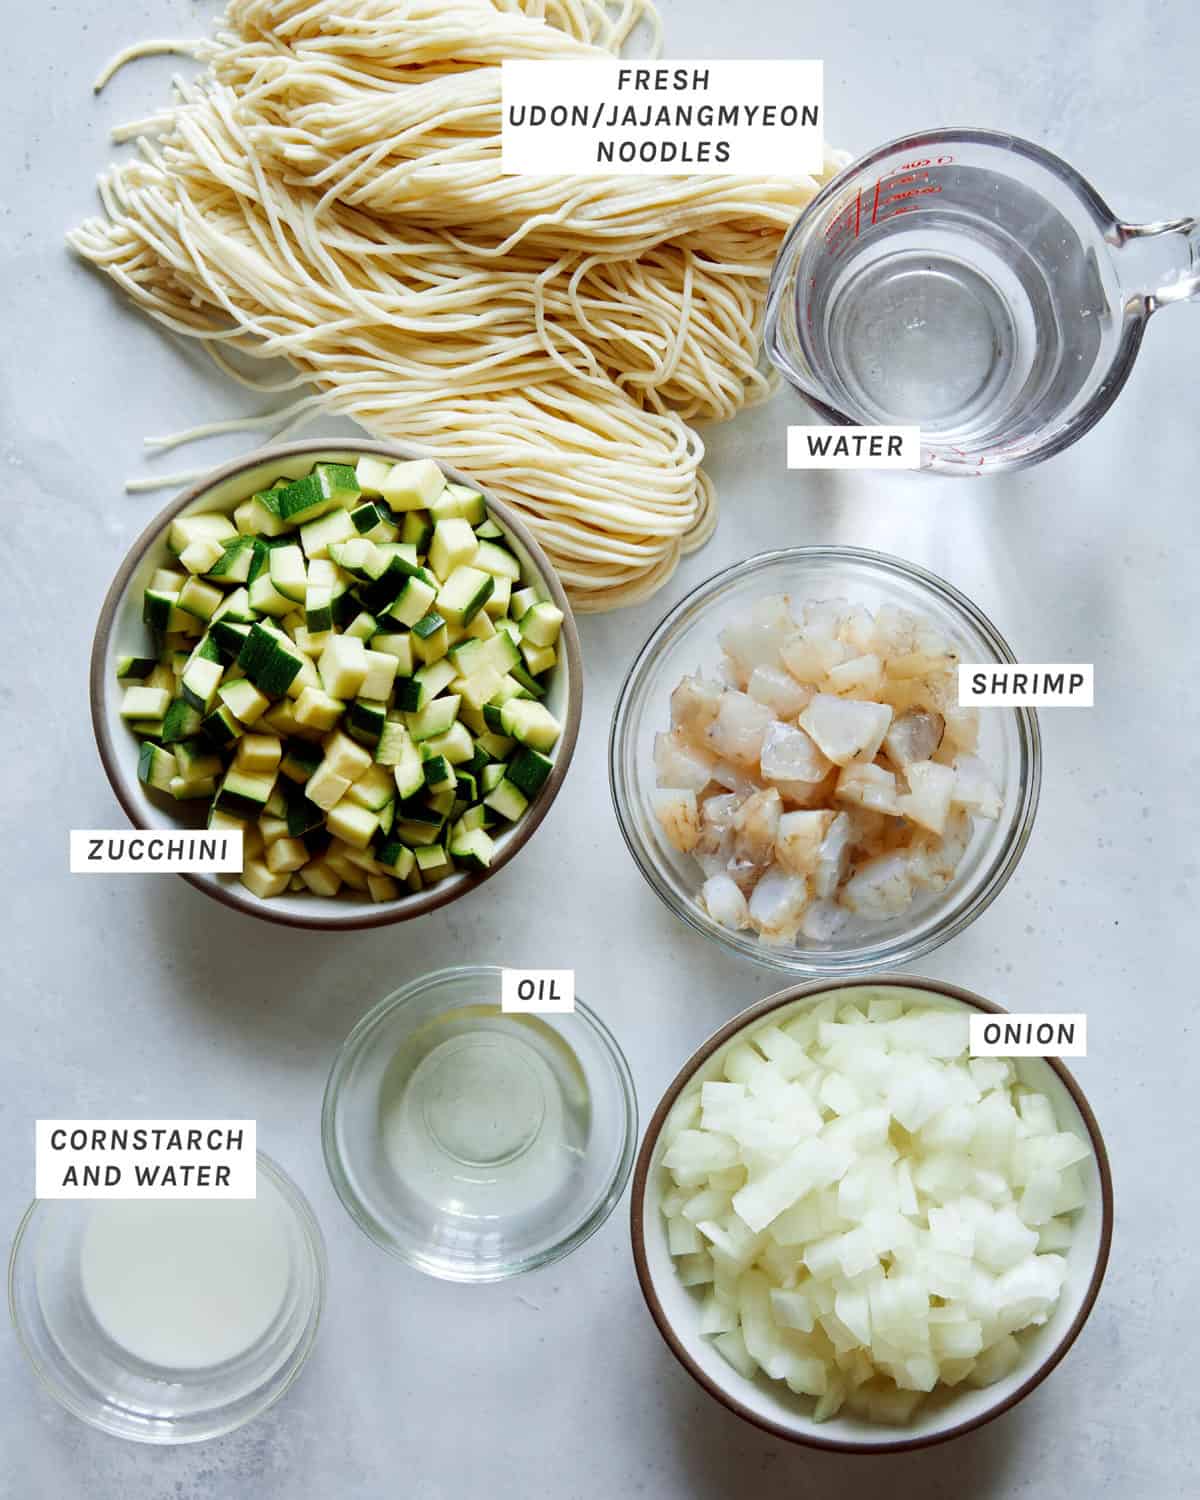 Ingredients to make Jajangmyeon.